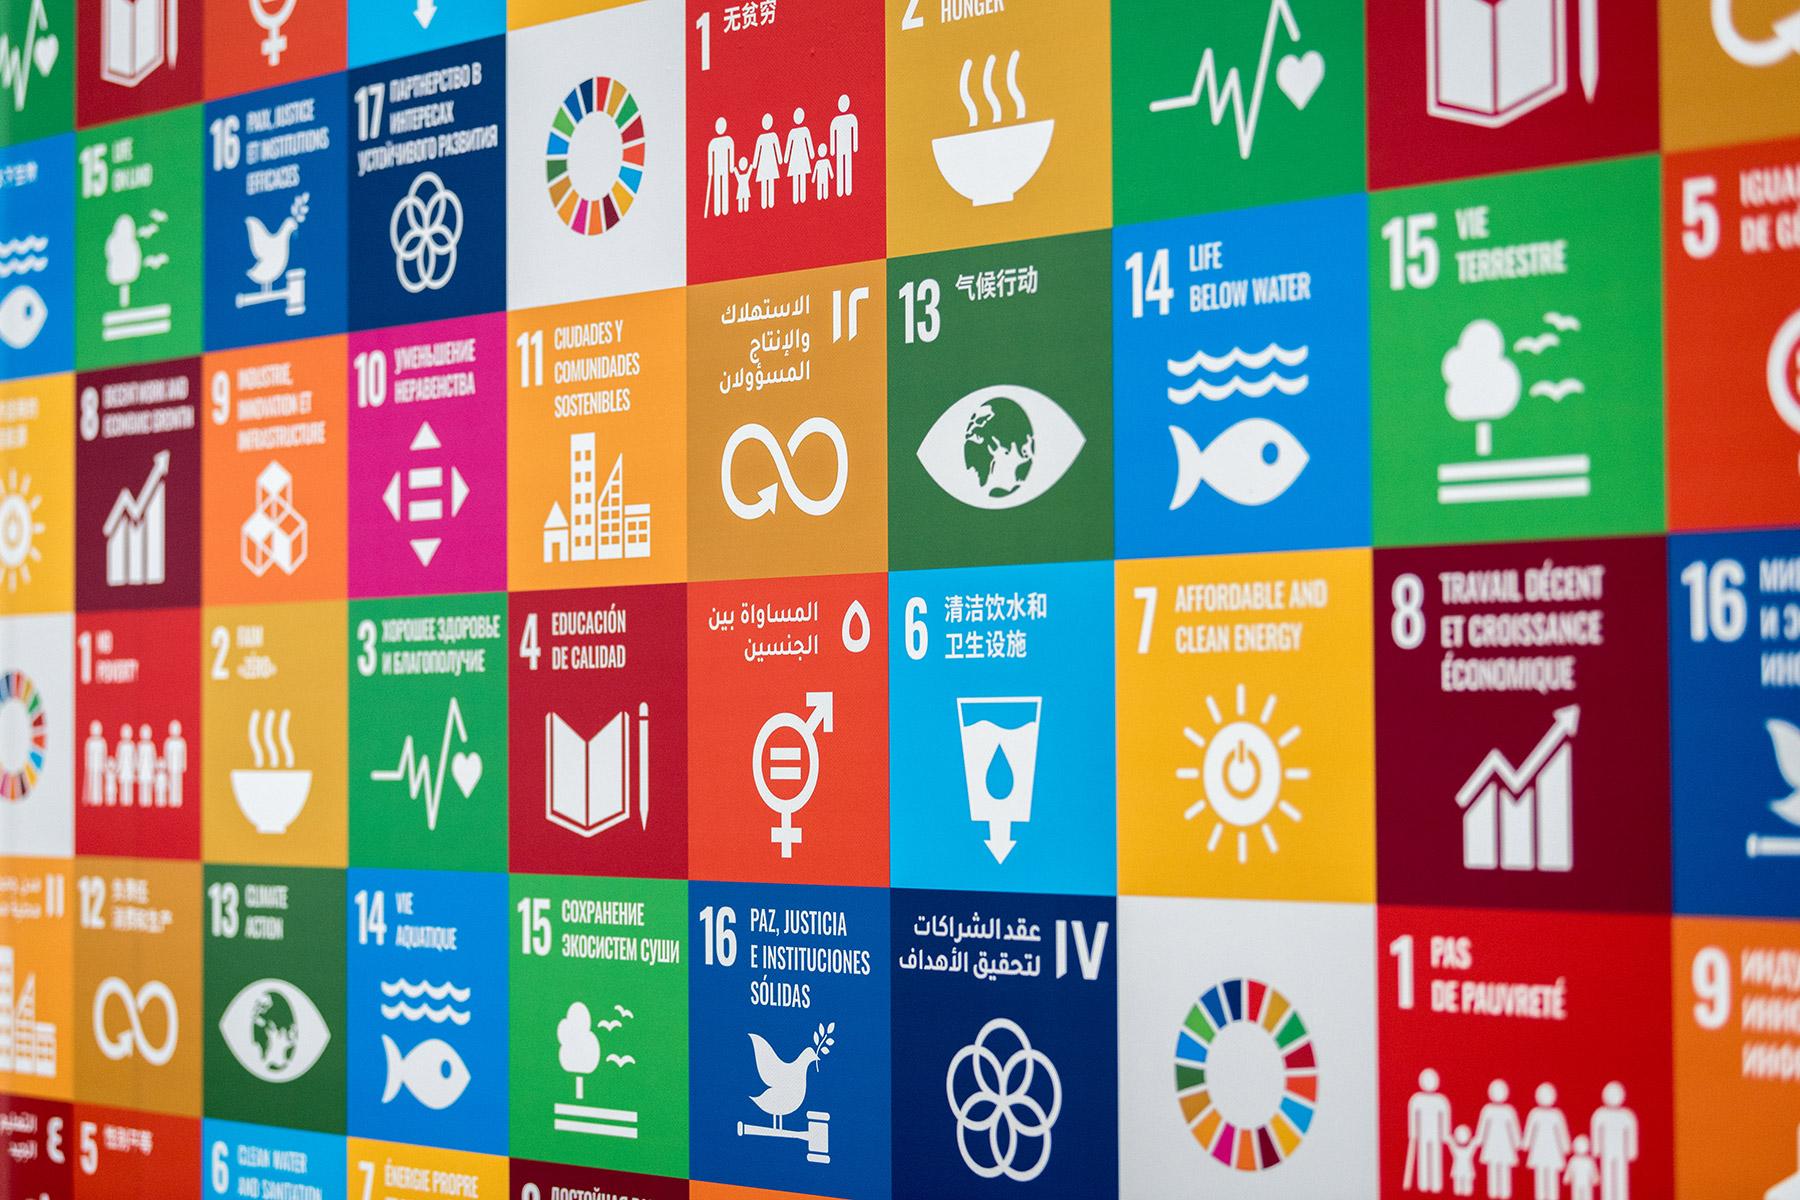 Die Online-Kampagne "17 Wochen, 17 Ziele" stellt jede Woche eines der UN-Ziele für nachhaltige Entwicklung in den Mittelpunkt und ruft zu Aktionen zu dem jeweiligen Thema auf. Foto LWB/Albin Hillert